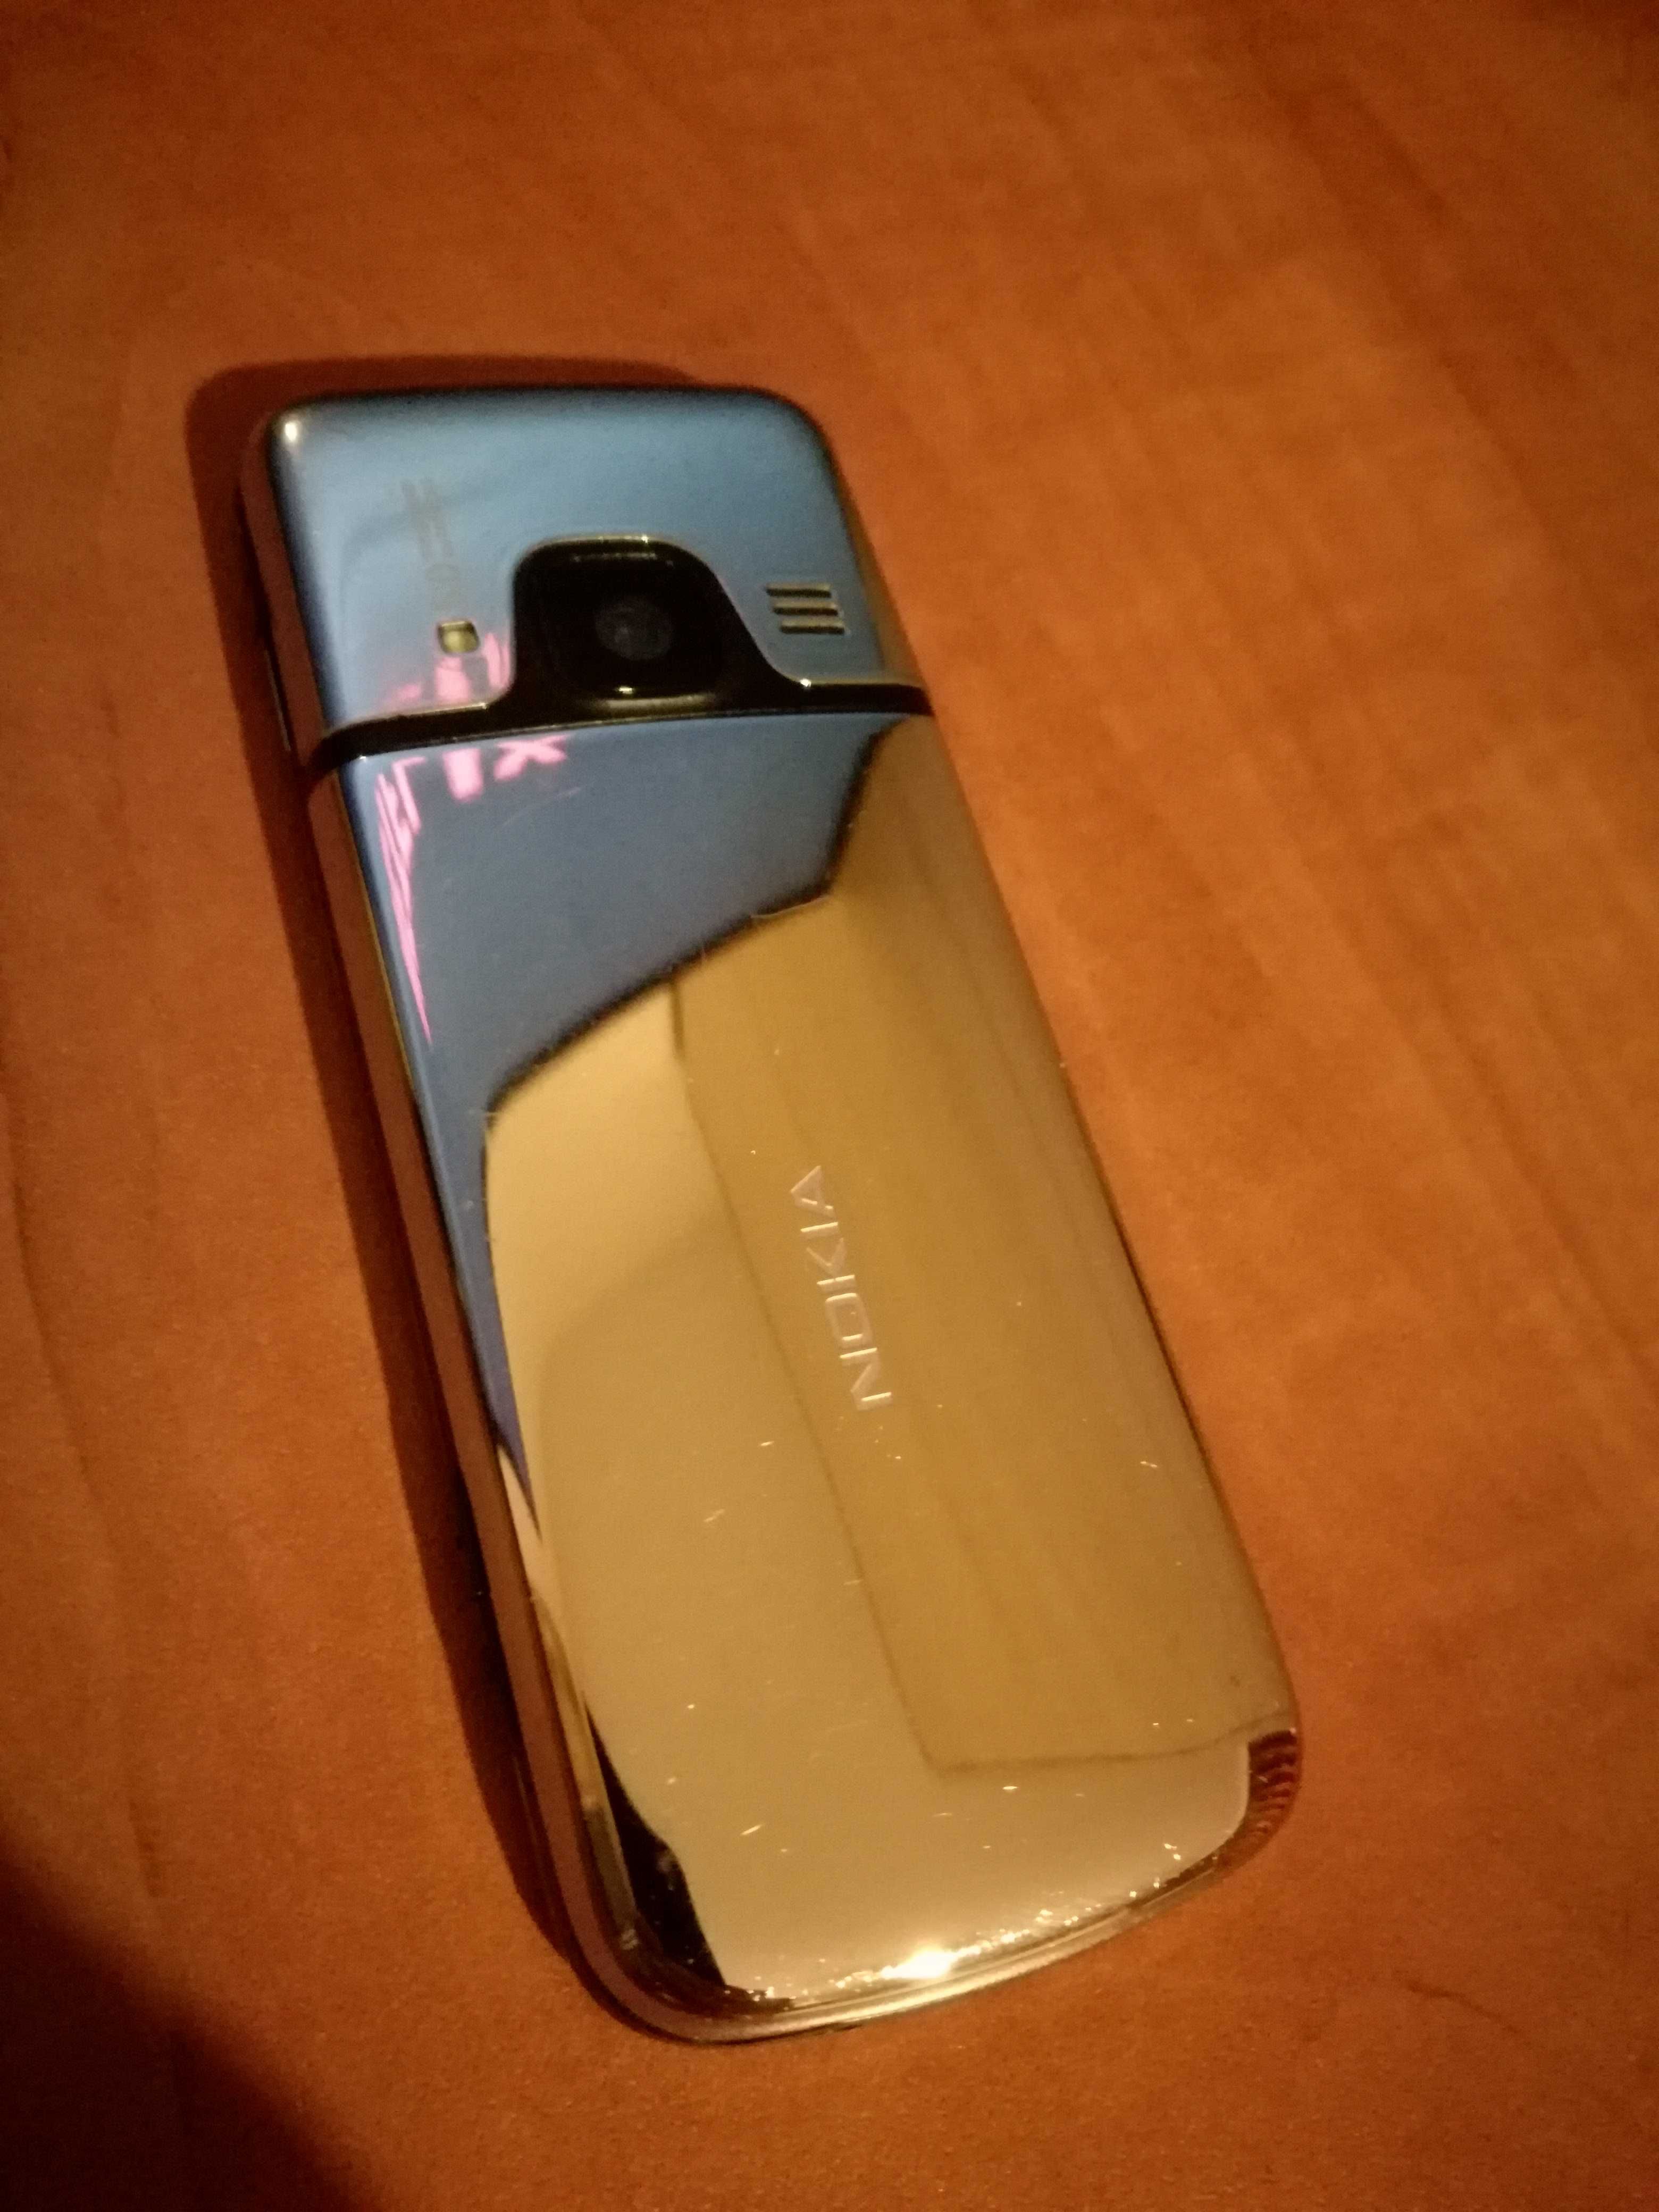 Nokia 6700 clasic